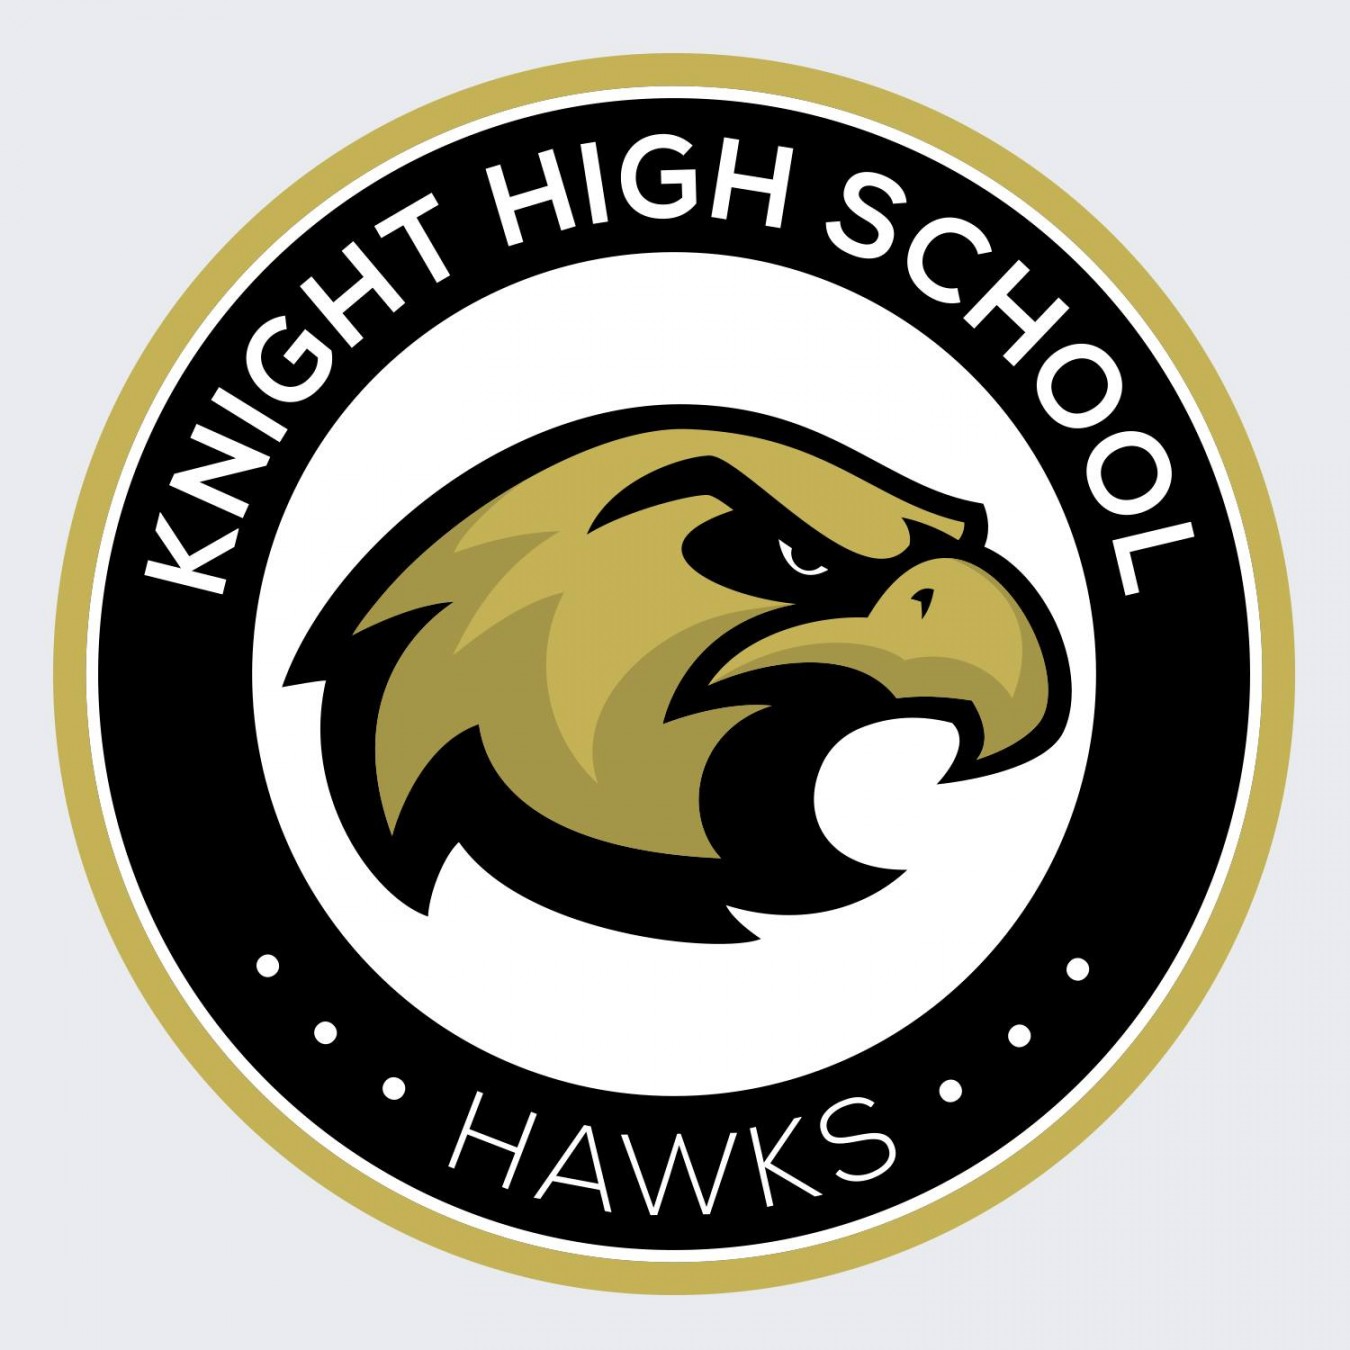 Knight High School Key Club